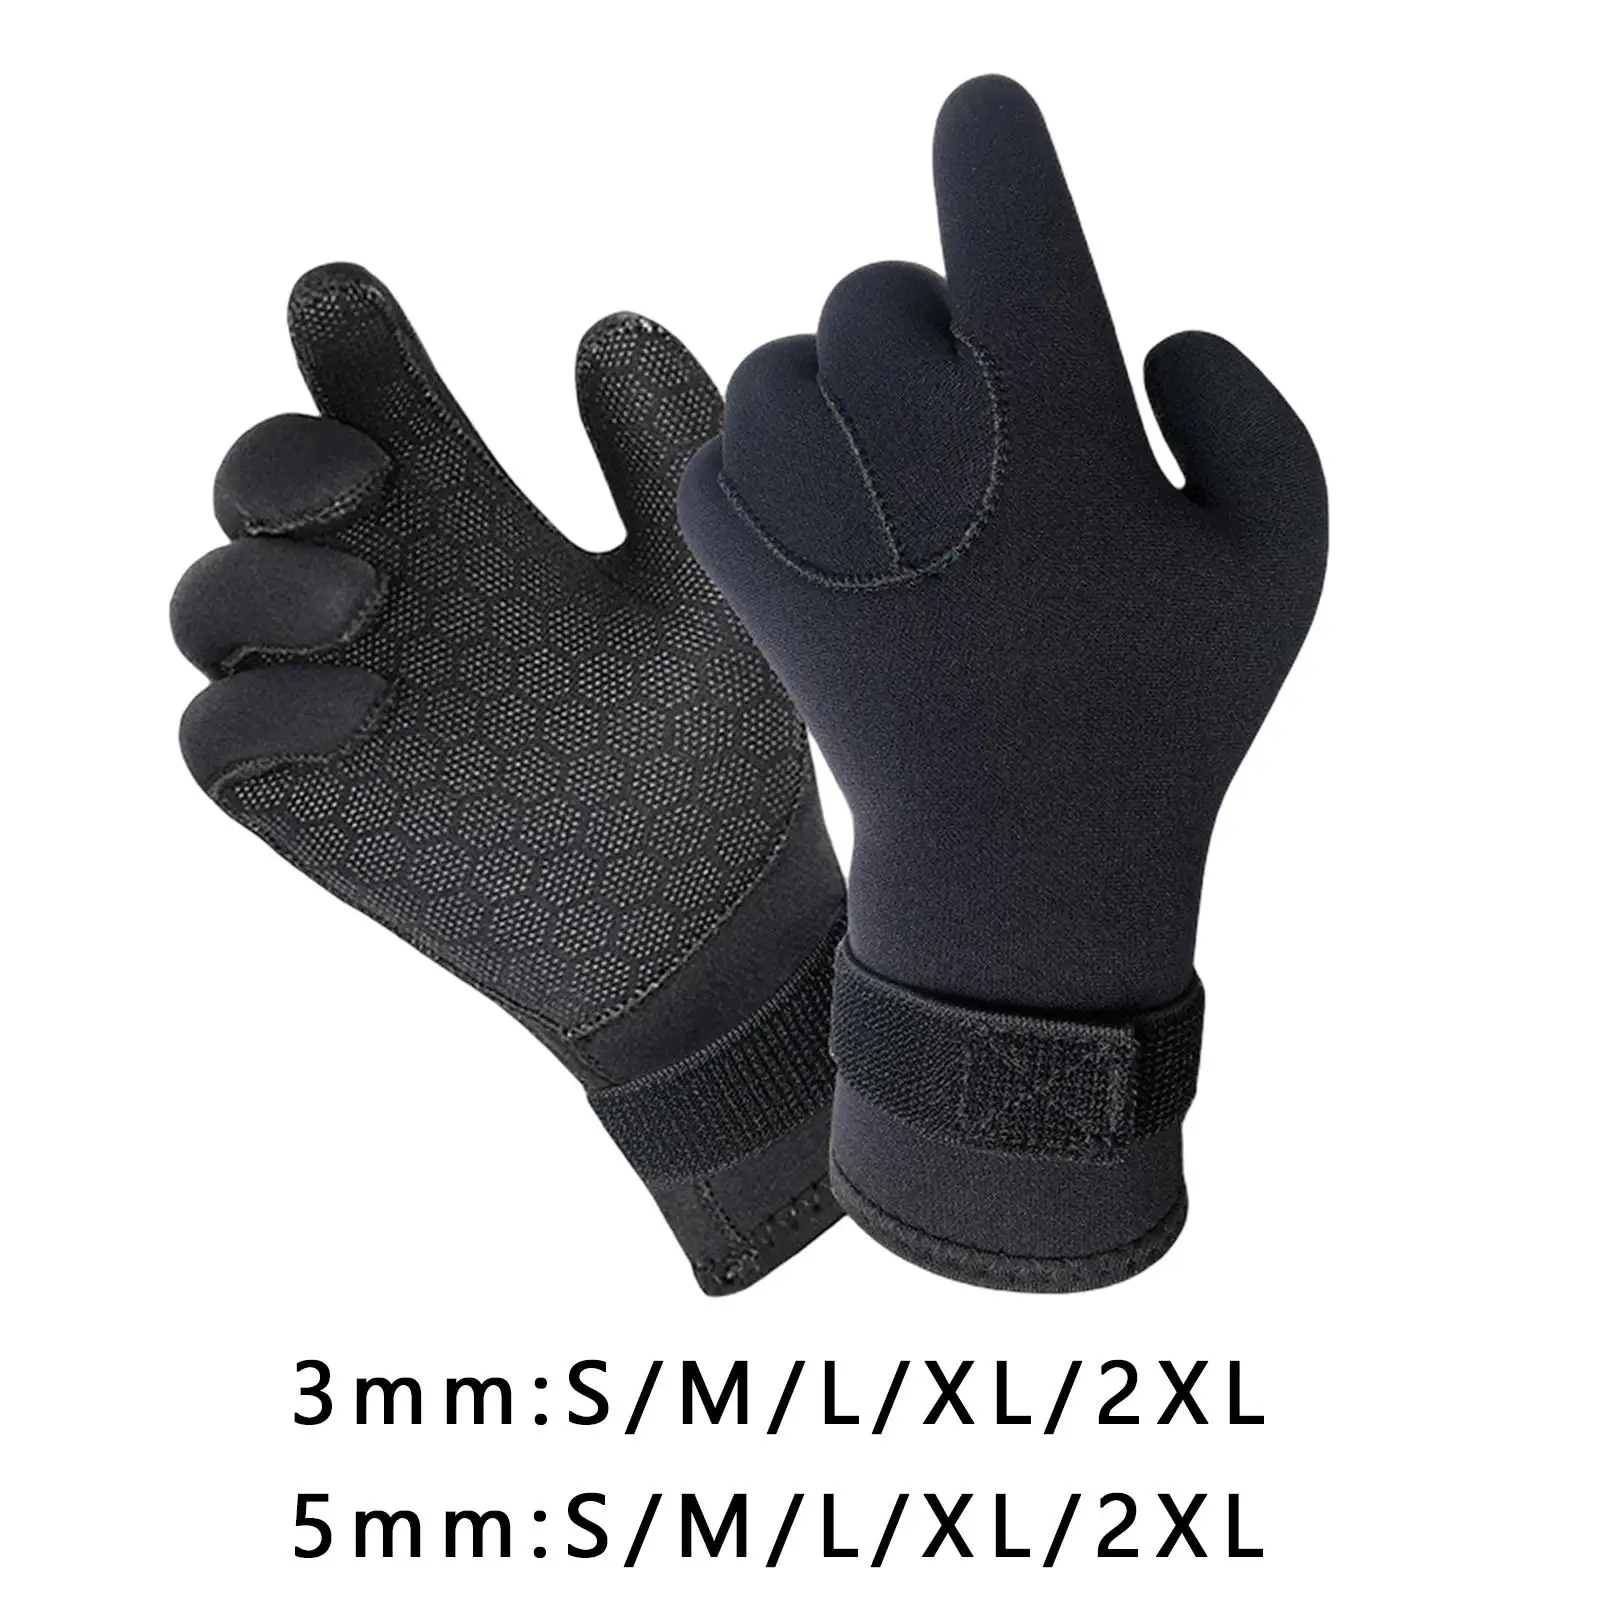 Scuba Diving Gloves Neoprene Wetsuit Gloves Anti Slip Surfing Glove Five Finger Wetsuit Gloves for Kayaking Paddling Rafting